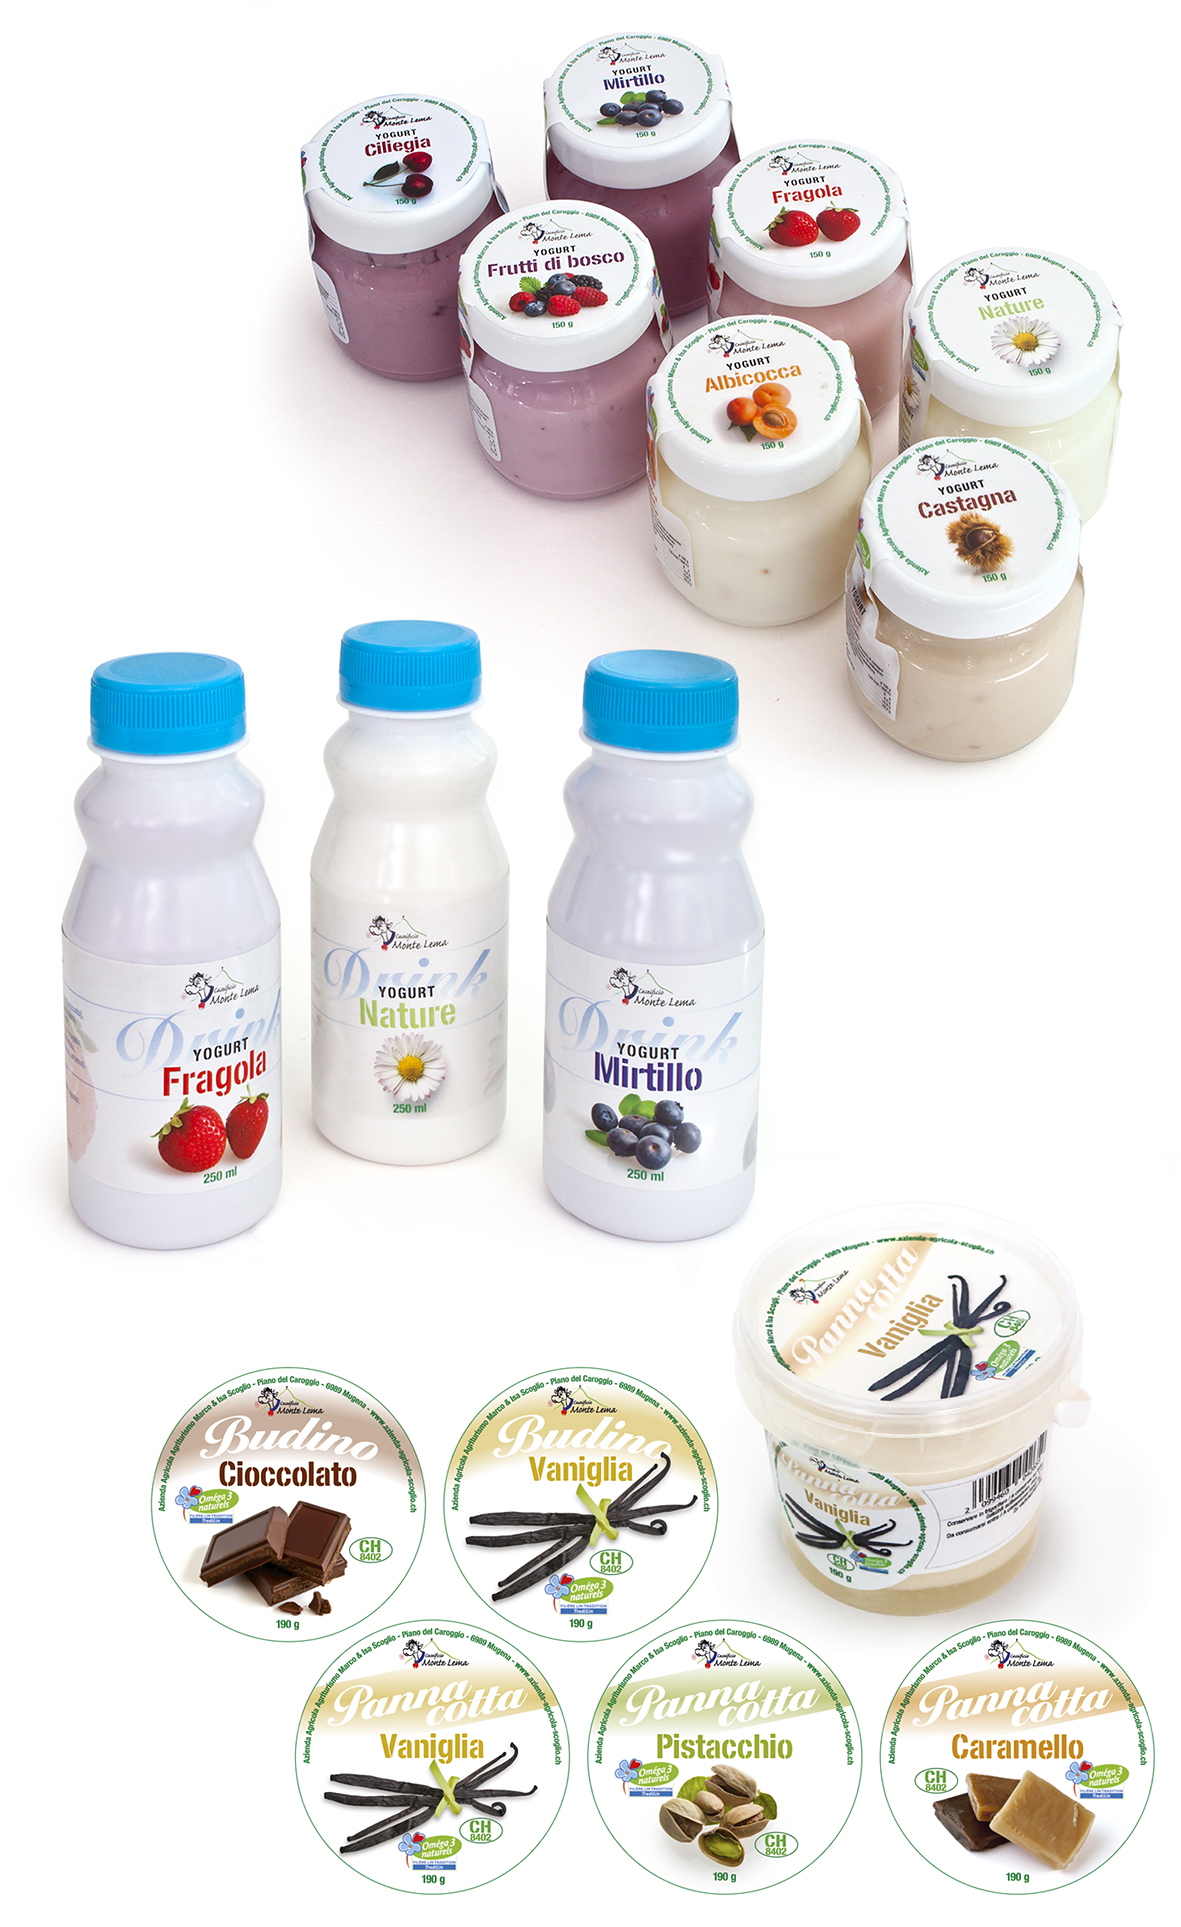 Packaging: Azienda Agricola Scoglio